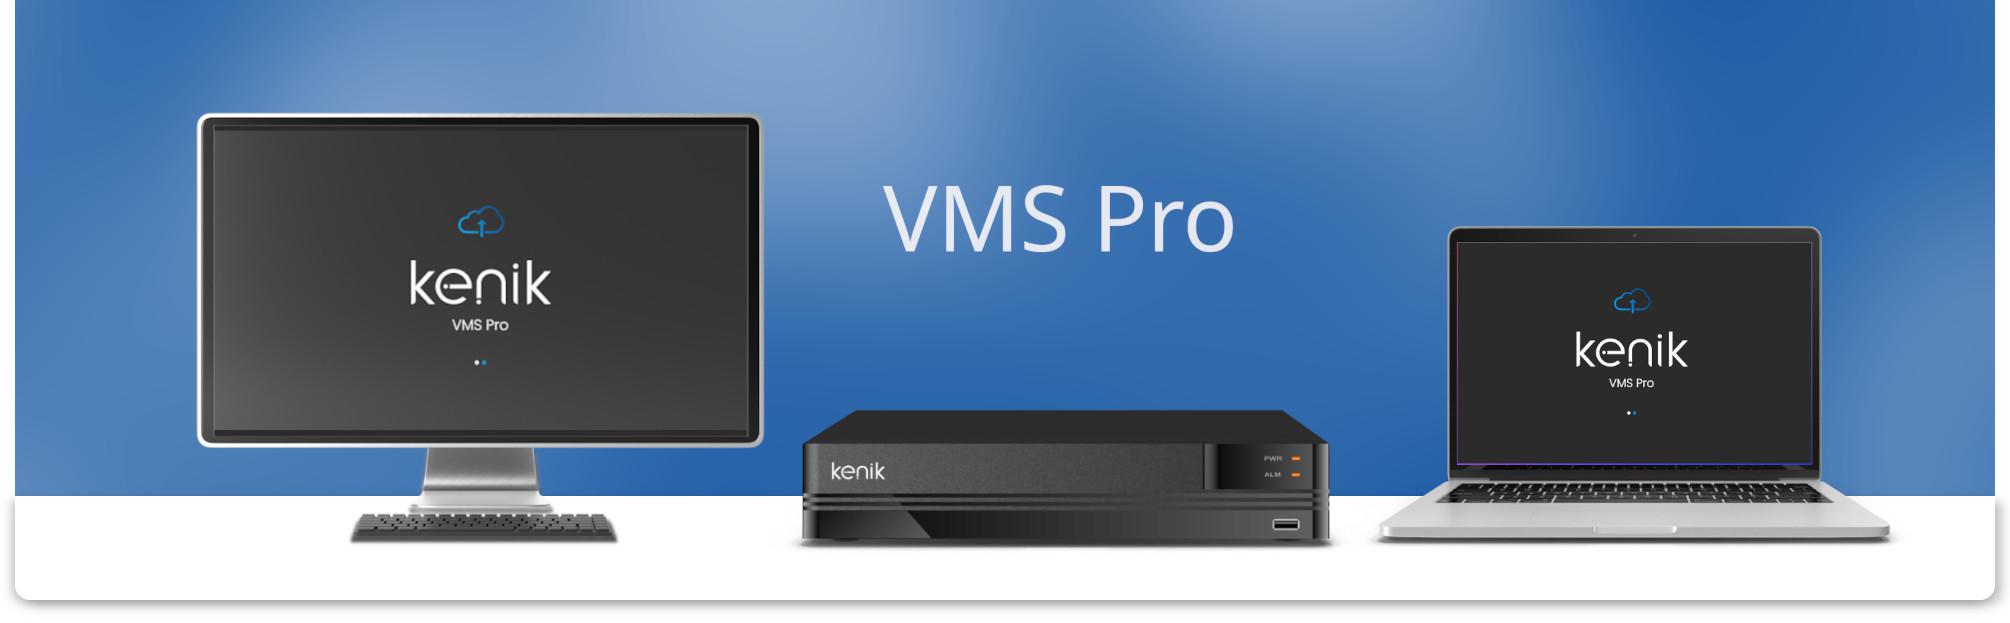 Oprogramowanie VMS Pro